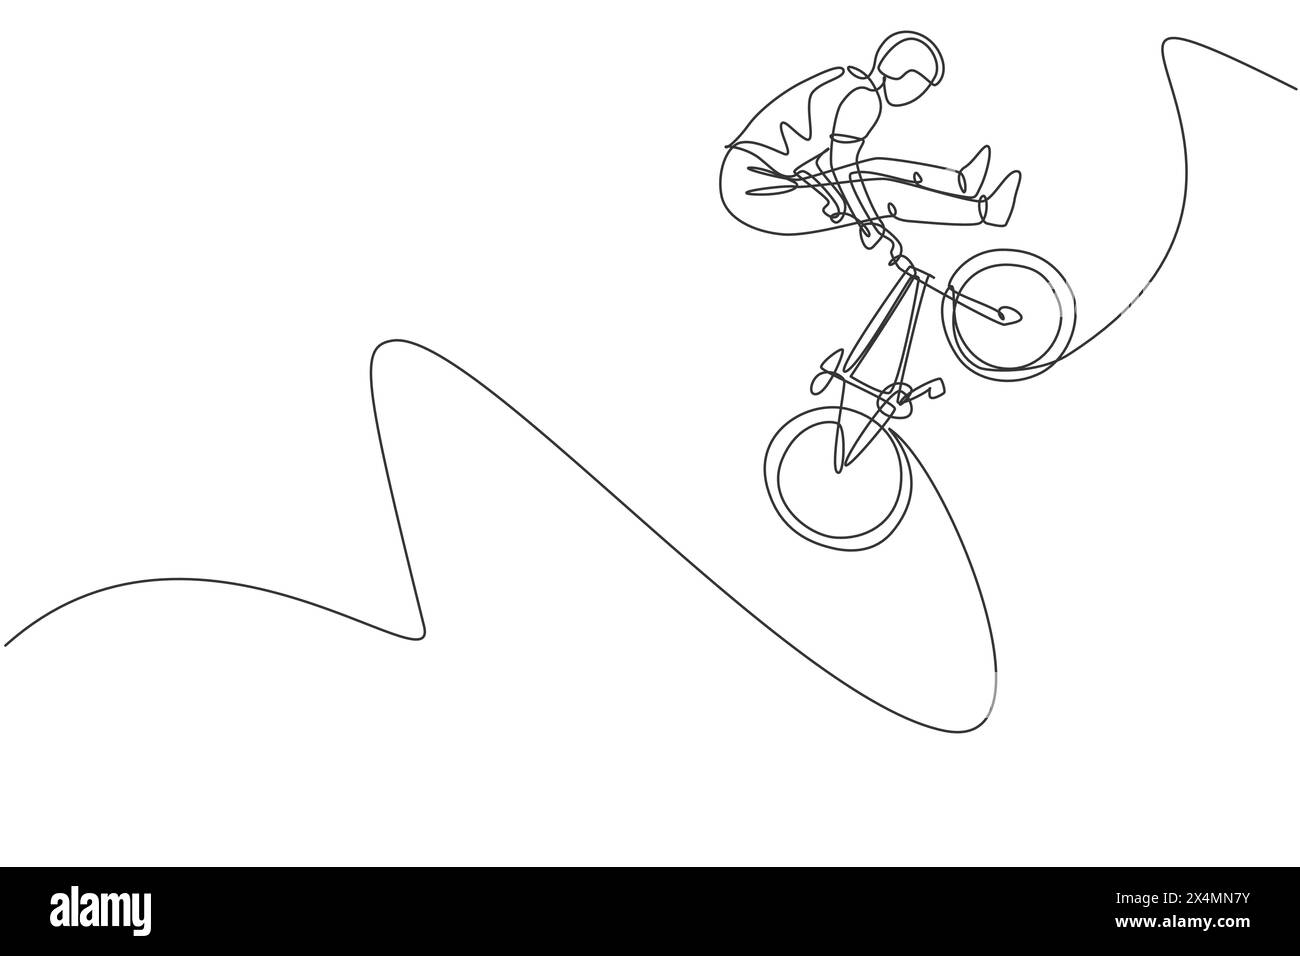 Eine durchgehende Linienzeichnung des jungen BMX-Fahrradfahrers springt im Skatepark in den Lufttrick. Extreme Sport Konzept Vektor Illustration. Einfach Stock Vektor